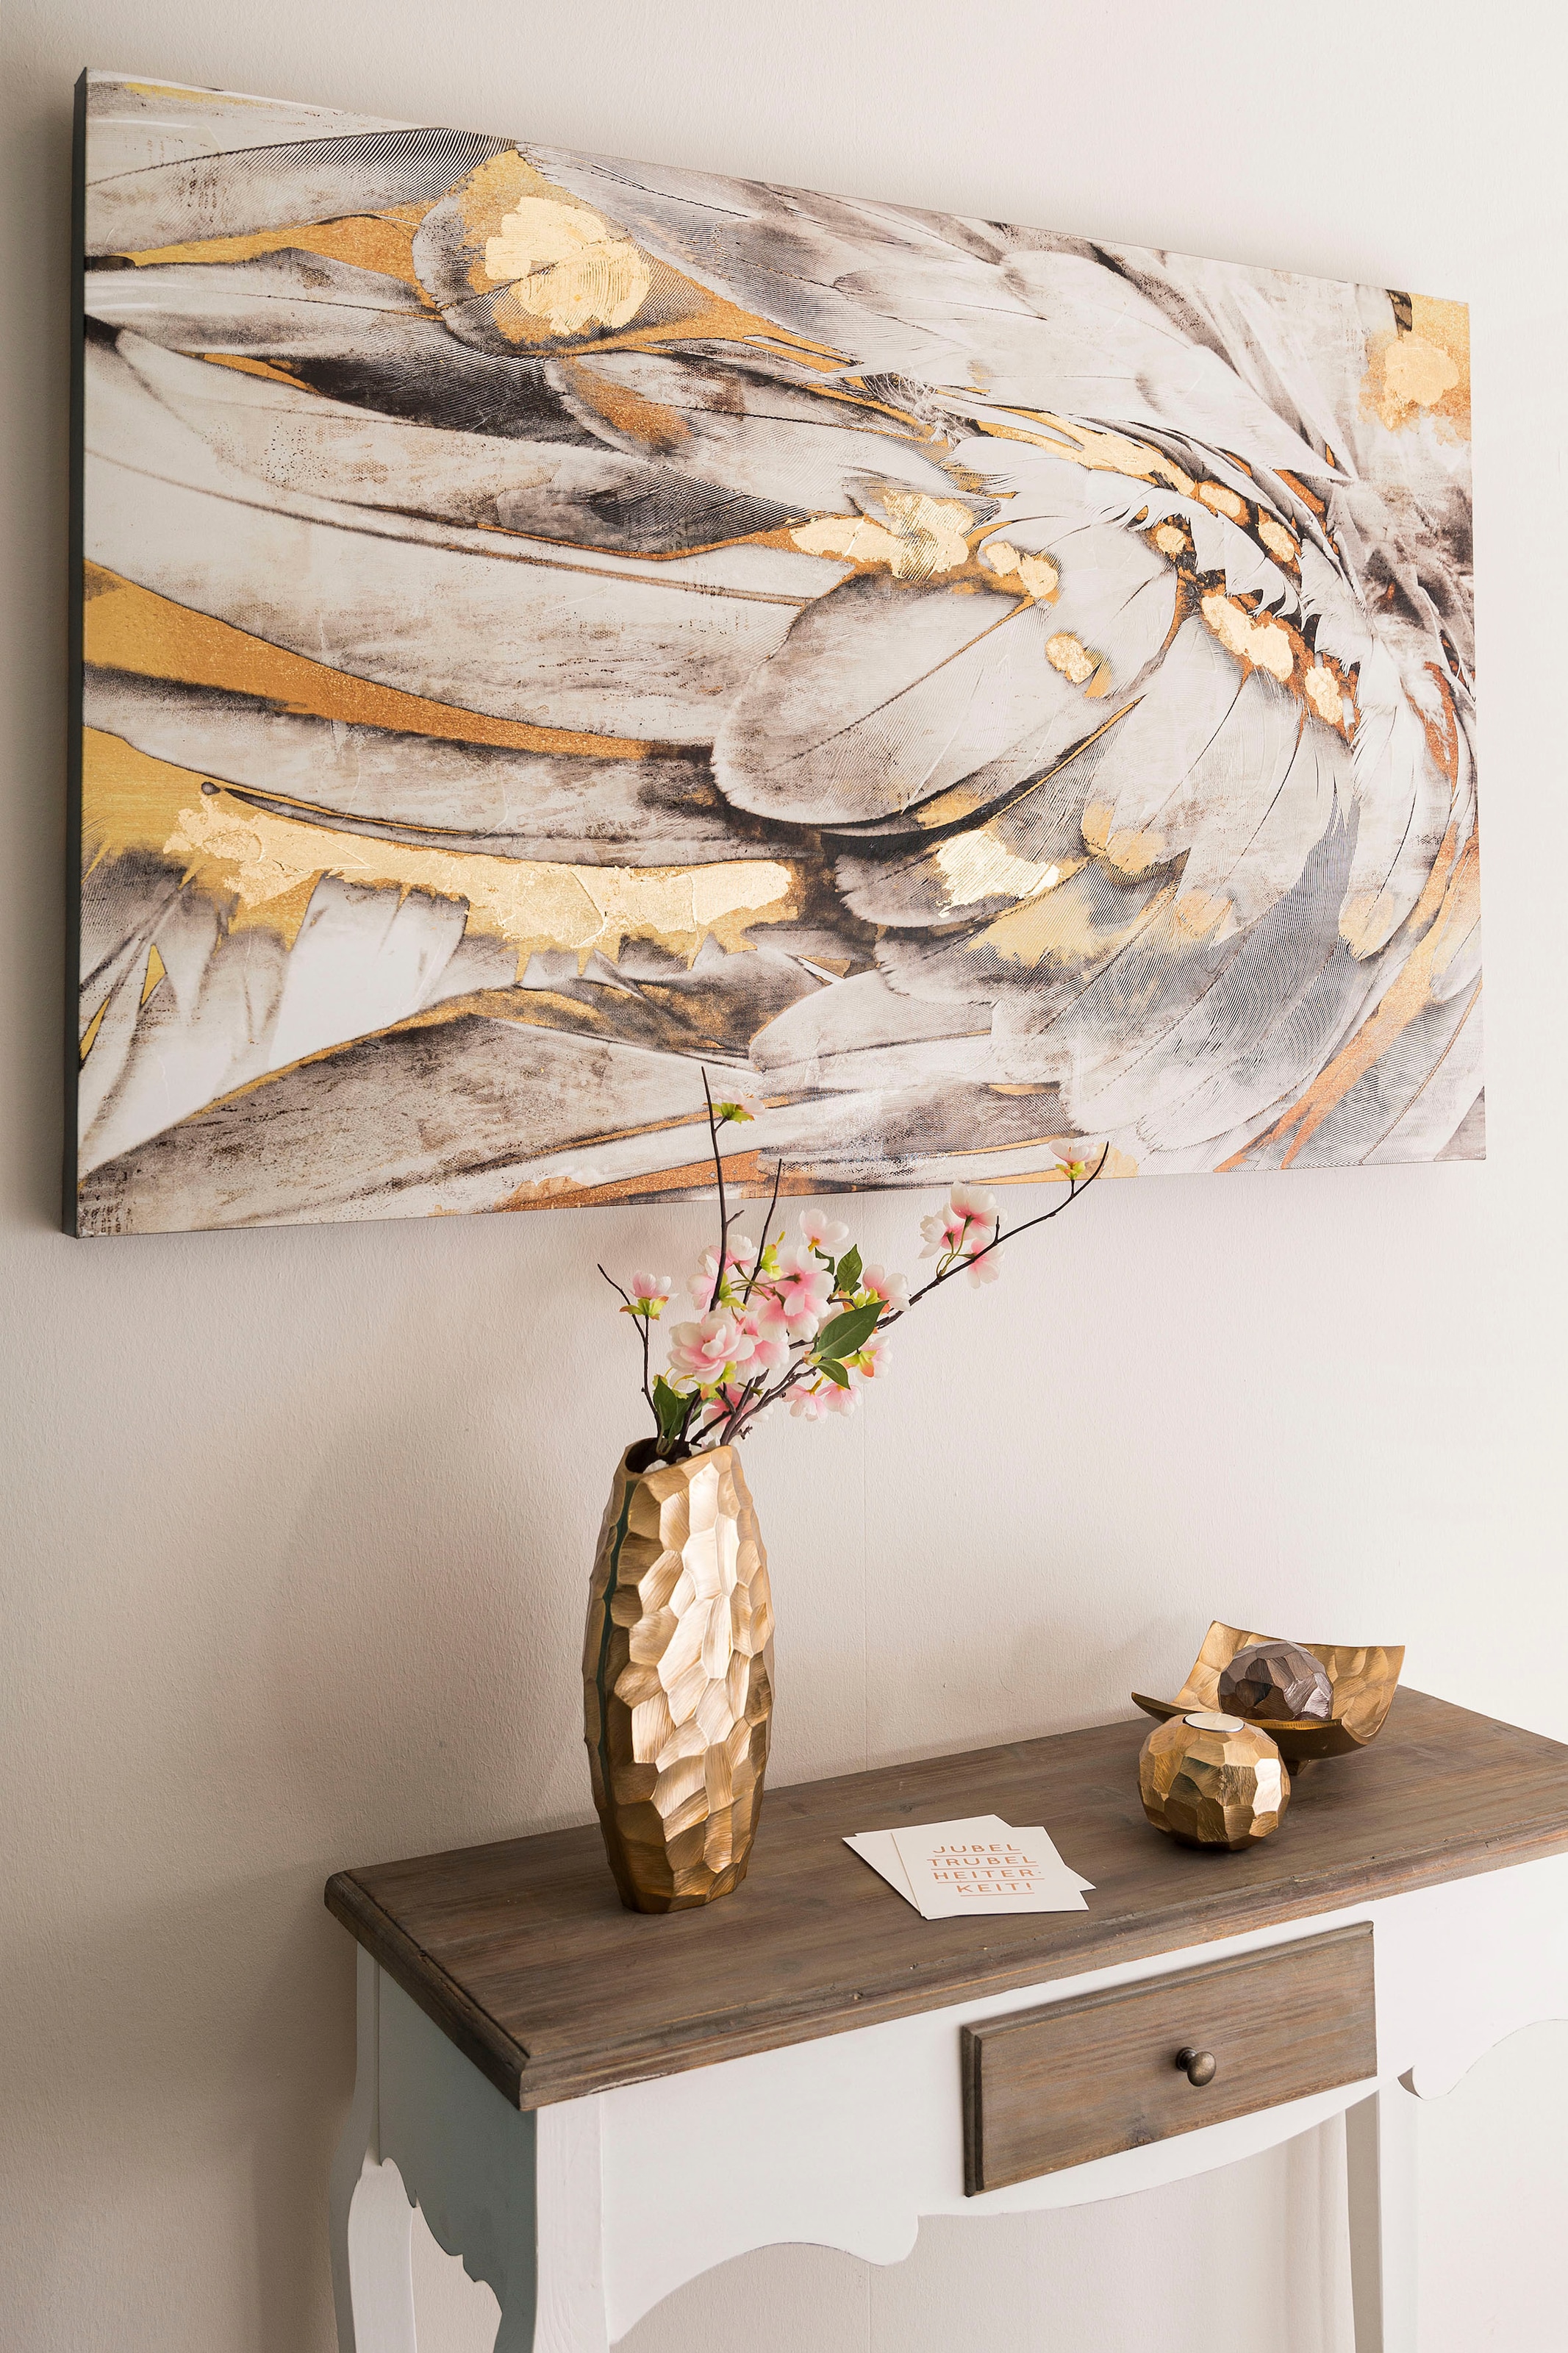 Ölbild »Gemälde Federn, weiß/goldfarben«, Bild auf Leinwand, 80x120 cm, Wohnzimmer